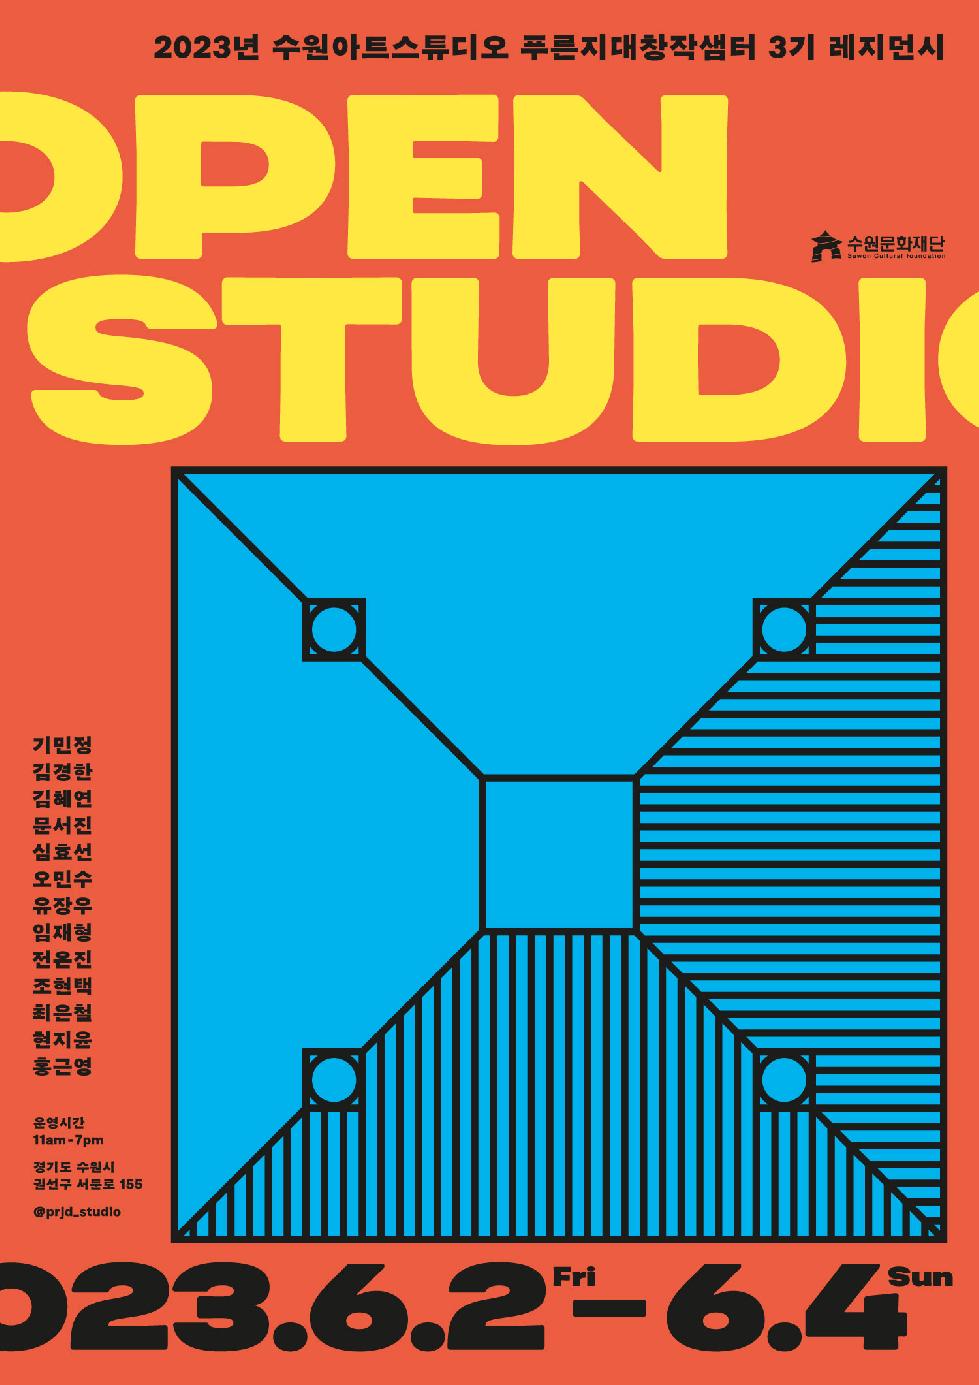 수원아트스튜디오 푸른지대창작샘터, 3기 참여작가 오픈스튜디오 개최  13